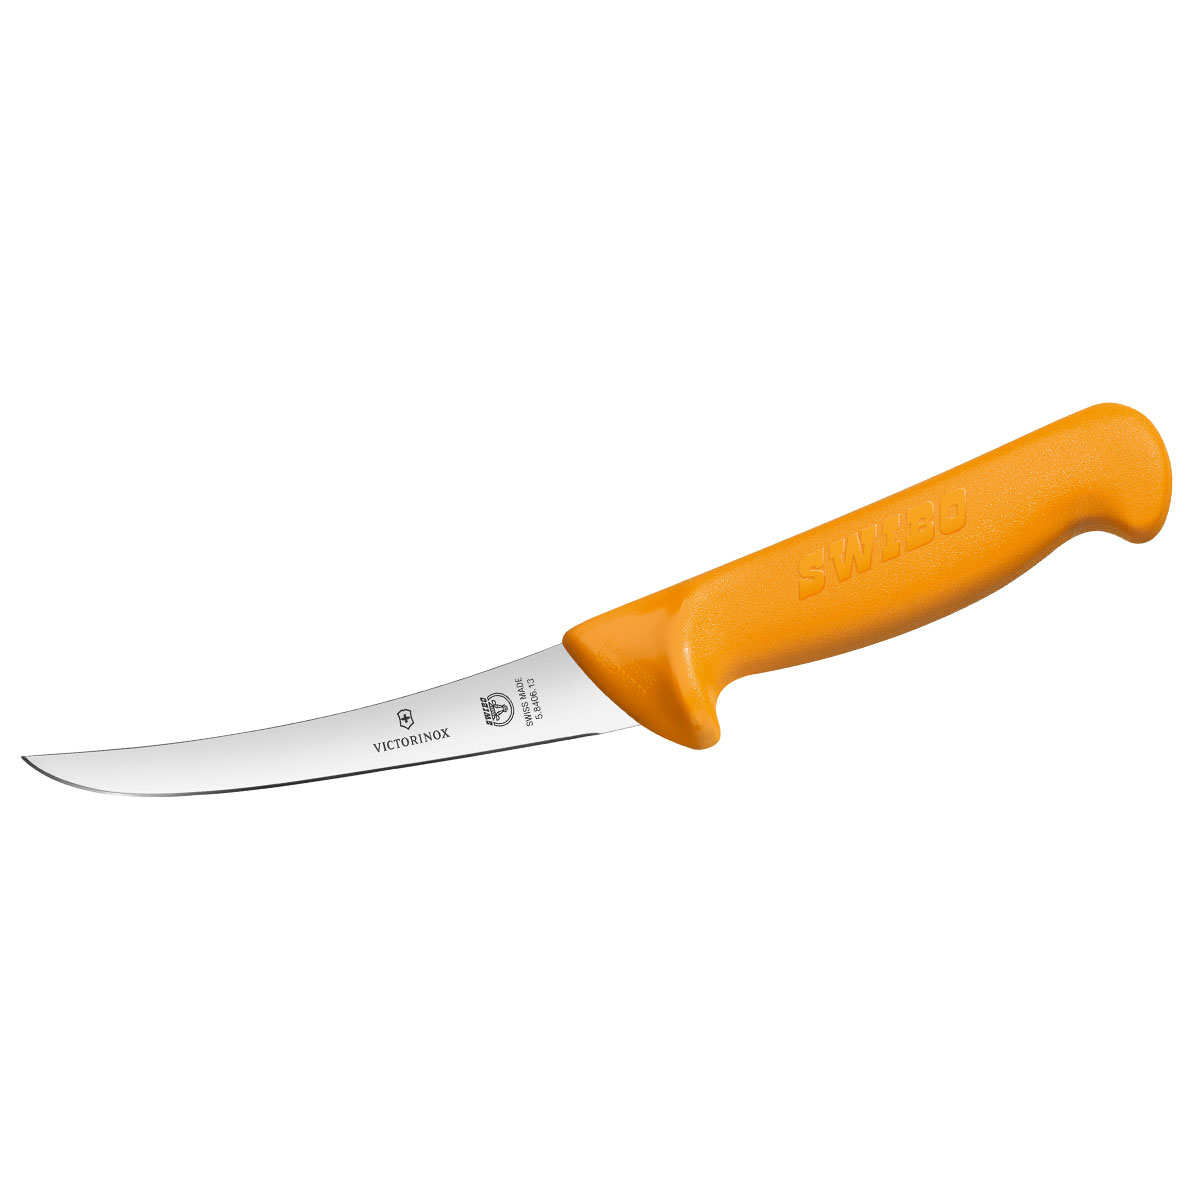 Swibo Boning Knife, 13cm (5) - Curved, Flexible (206-13)